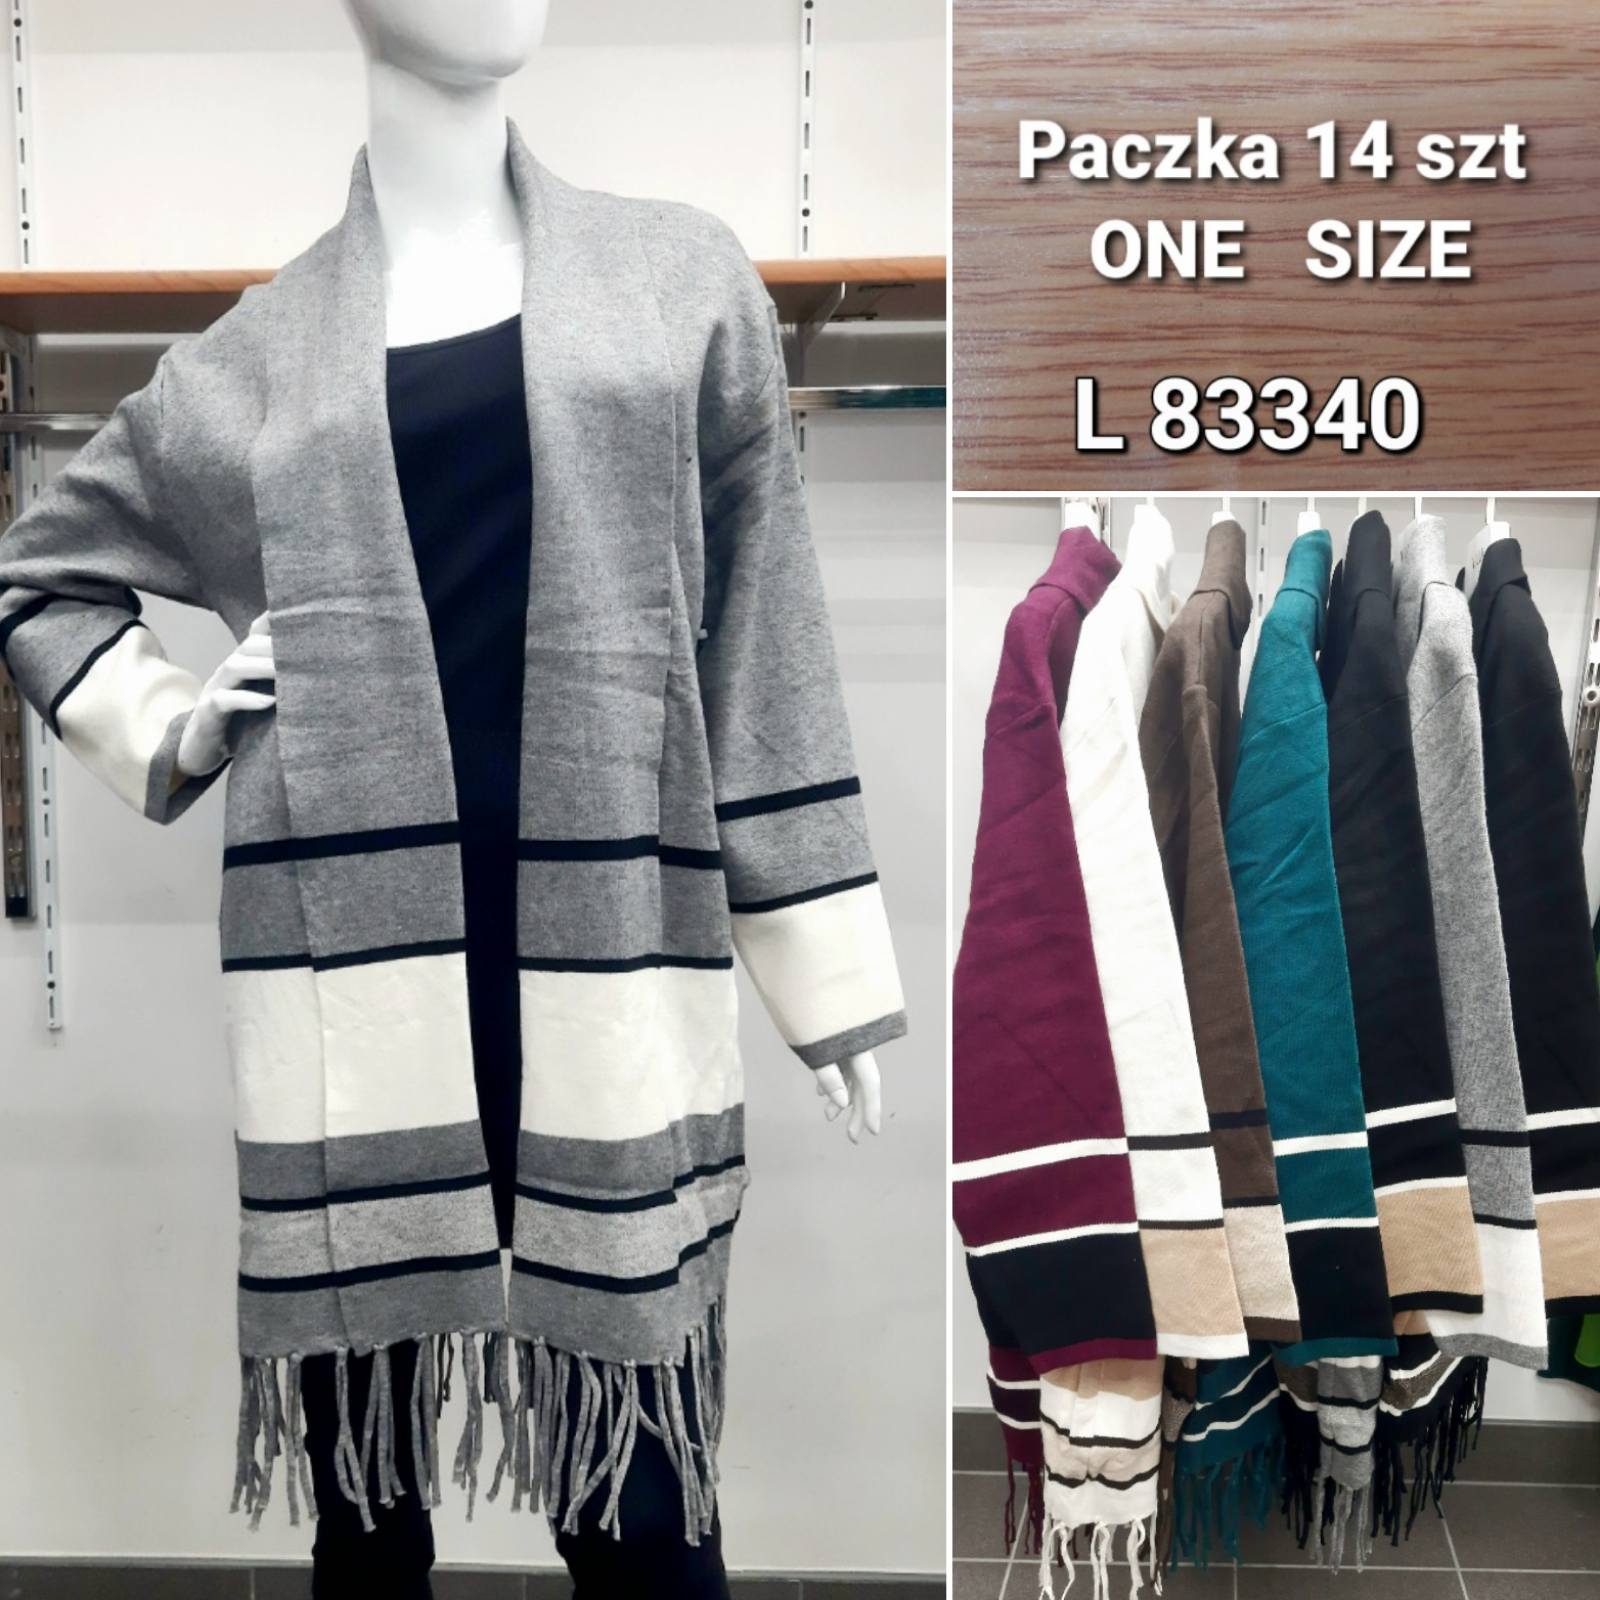 Swetry damskie Roz Standard, Mix kolor Paczka 14szt